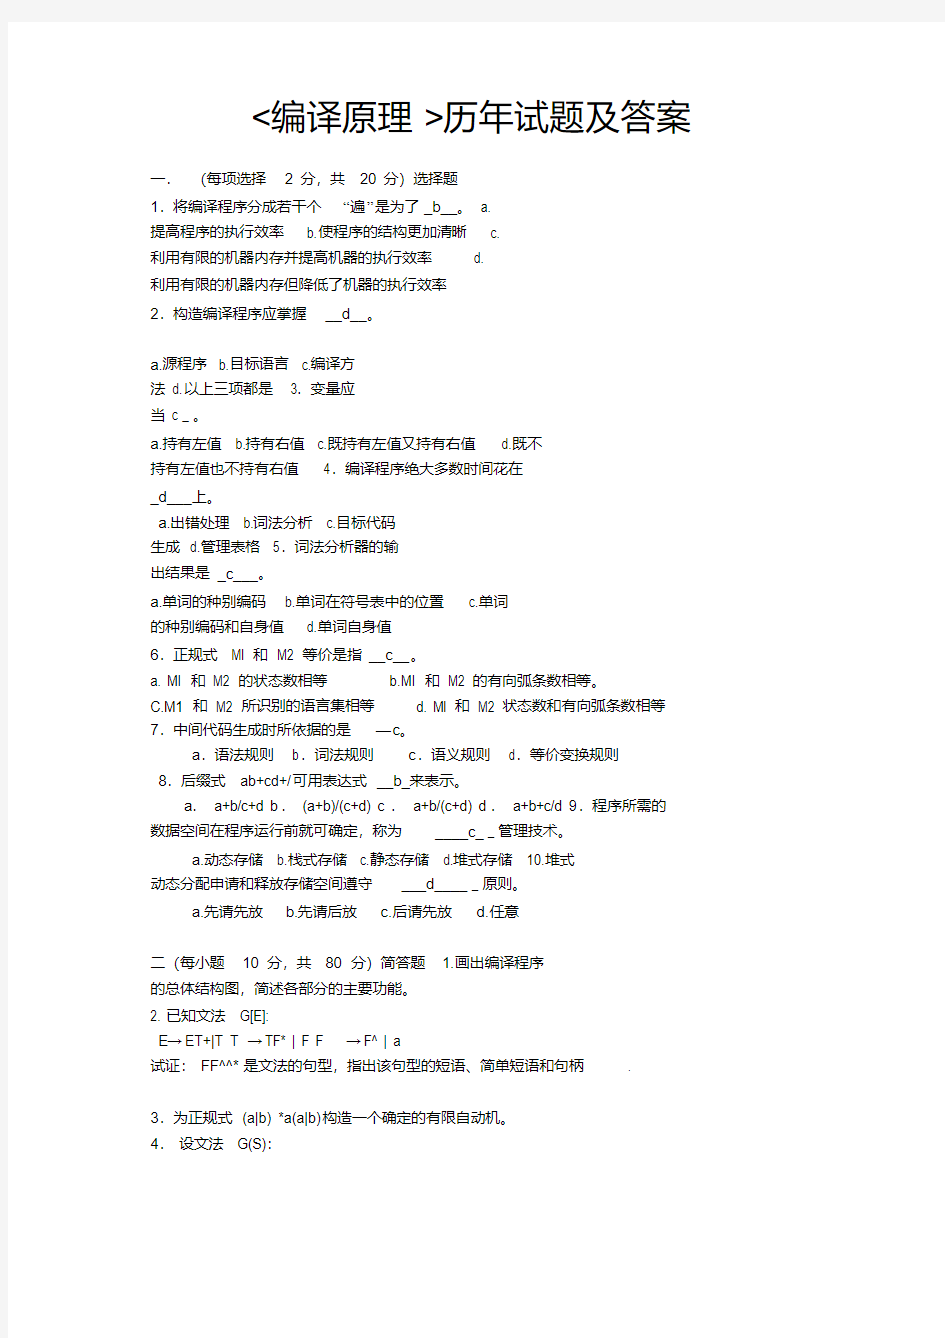 编译原理试题及答案(期末复习版).pdf资料